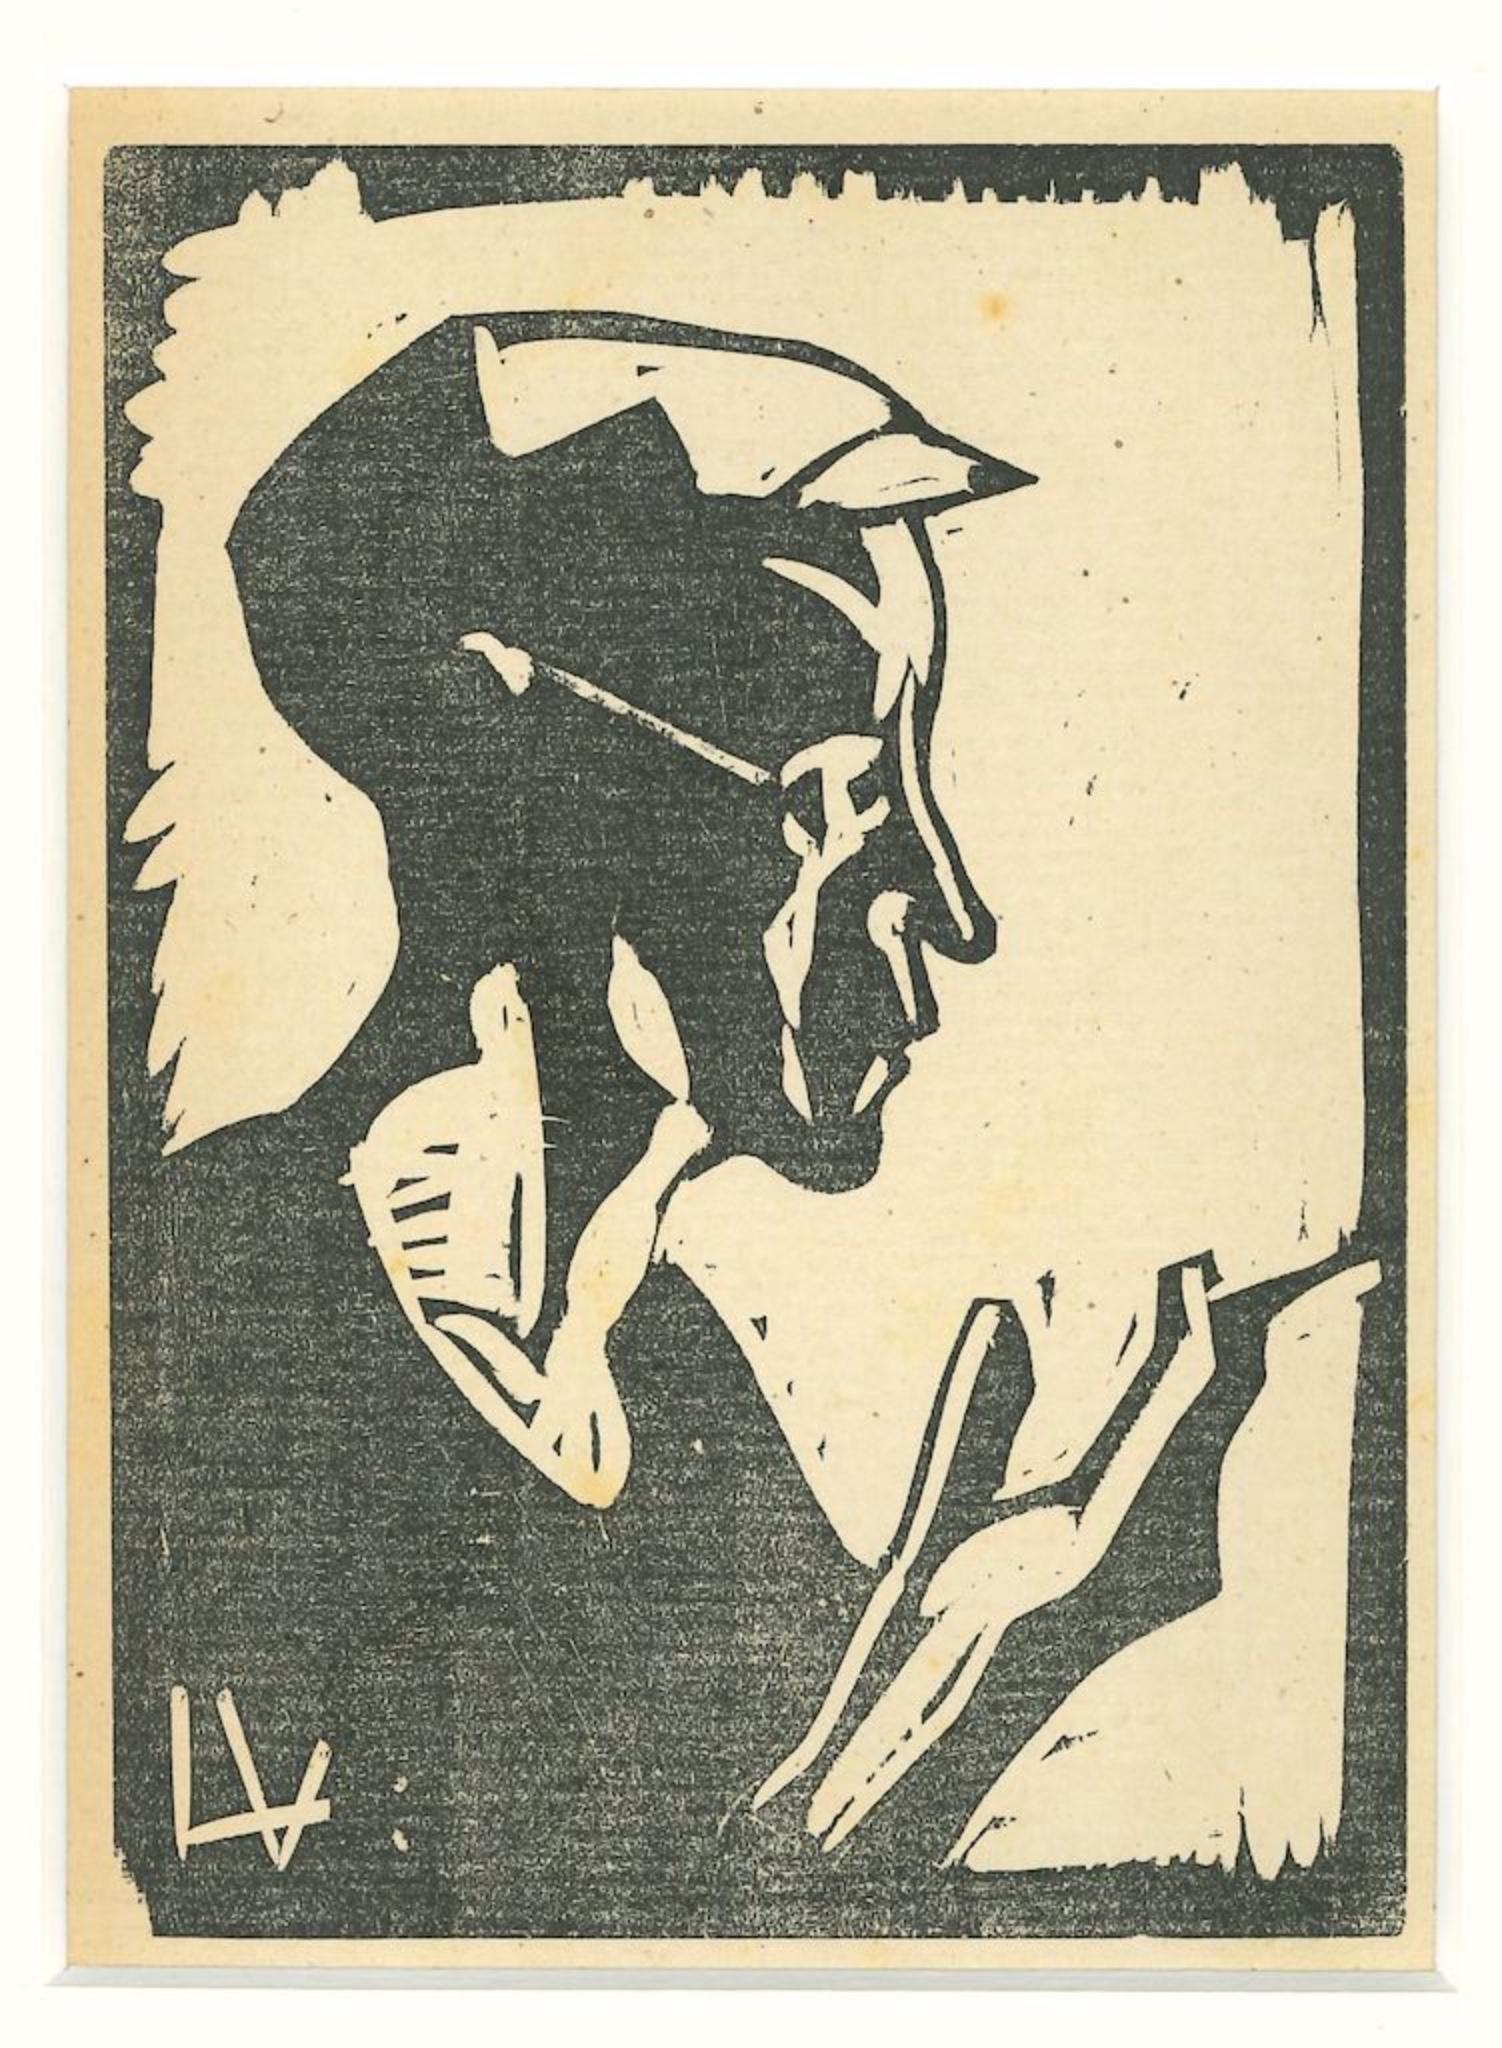 Sailor ist eine originale Xilographie auf Elfenbein, realisiert von dem italienischen Künstler Lorenzo Viani in 1930ca.

Monogramm des Künstlers unten links" LV".

Der Zustand der Erhaltung ist sehr gut.

Enthält ein Passepartout: 40 x 30 cm.

Das